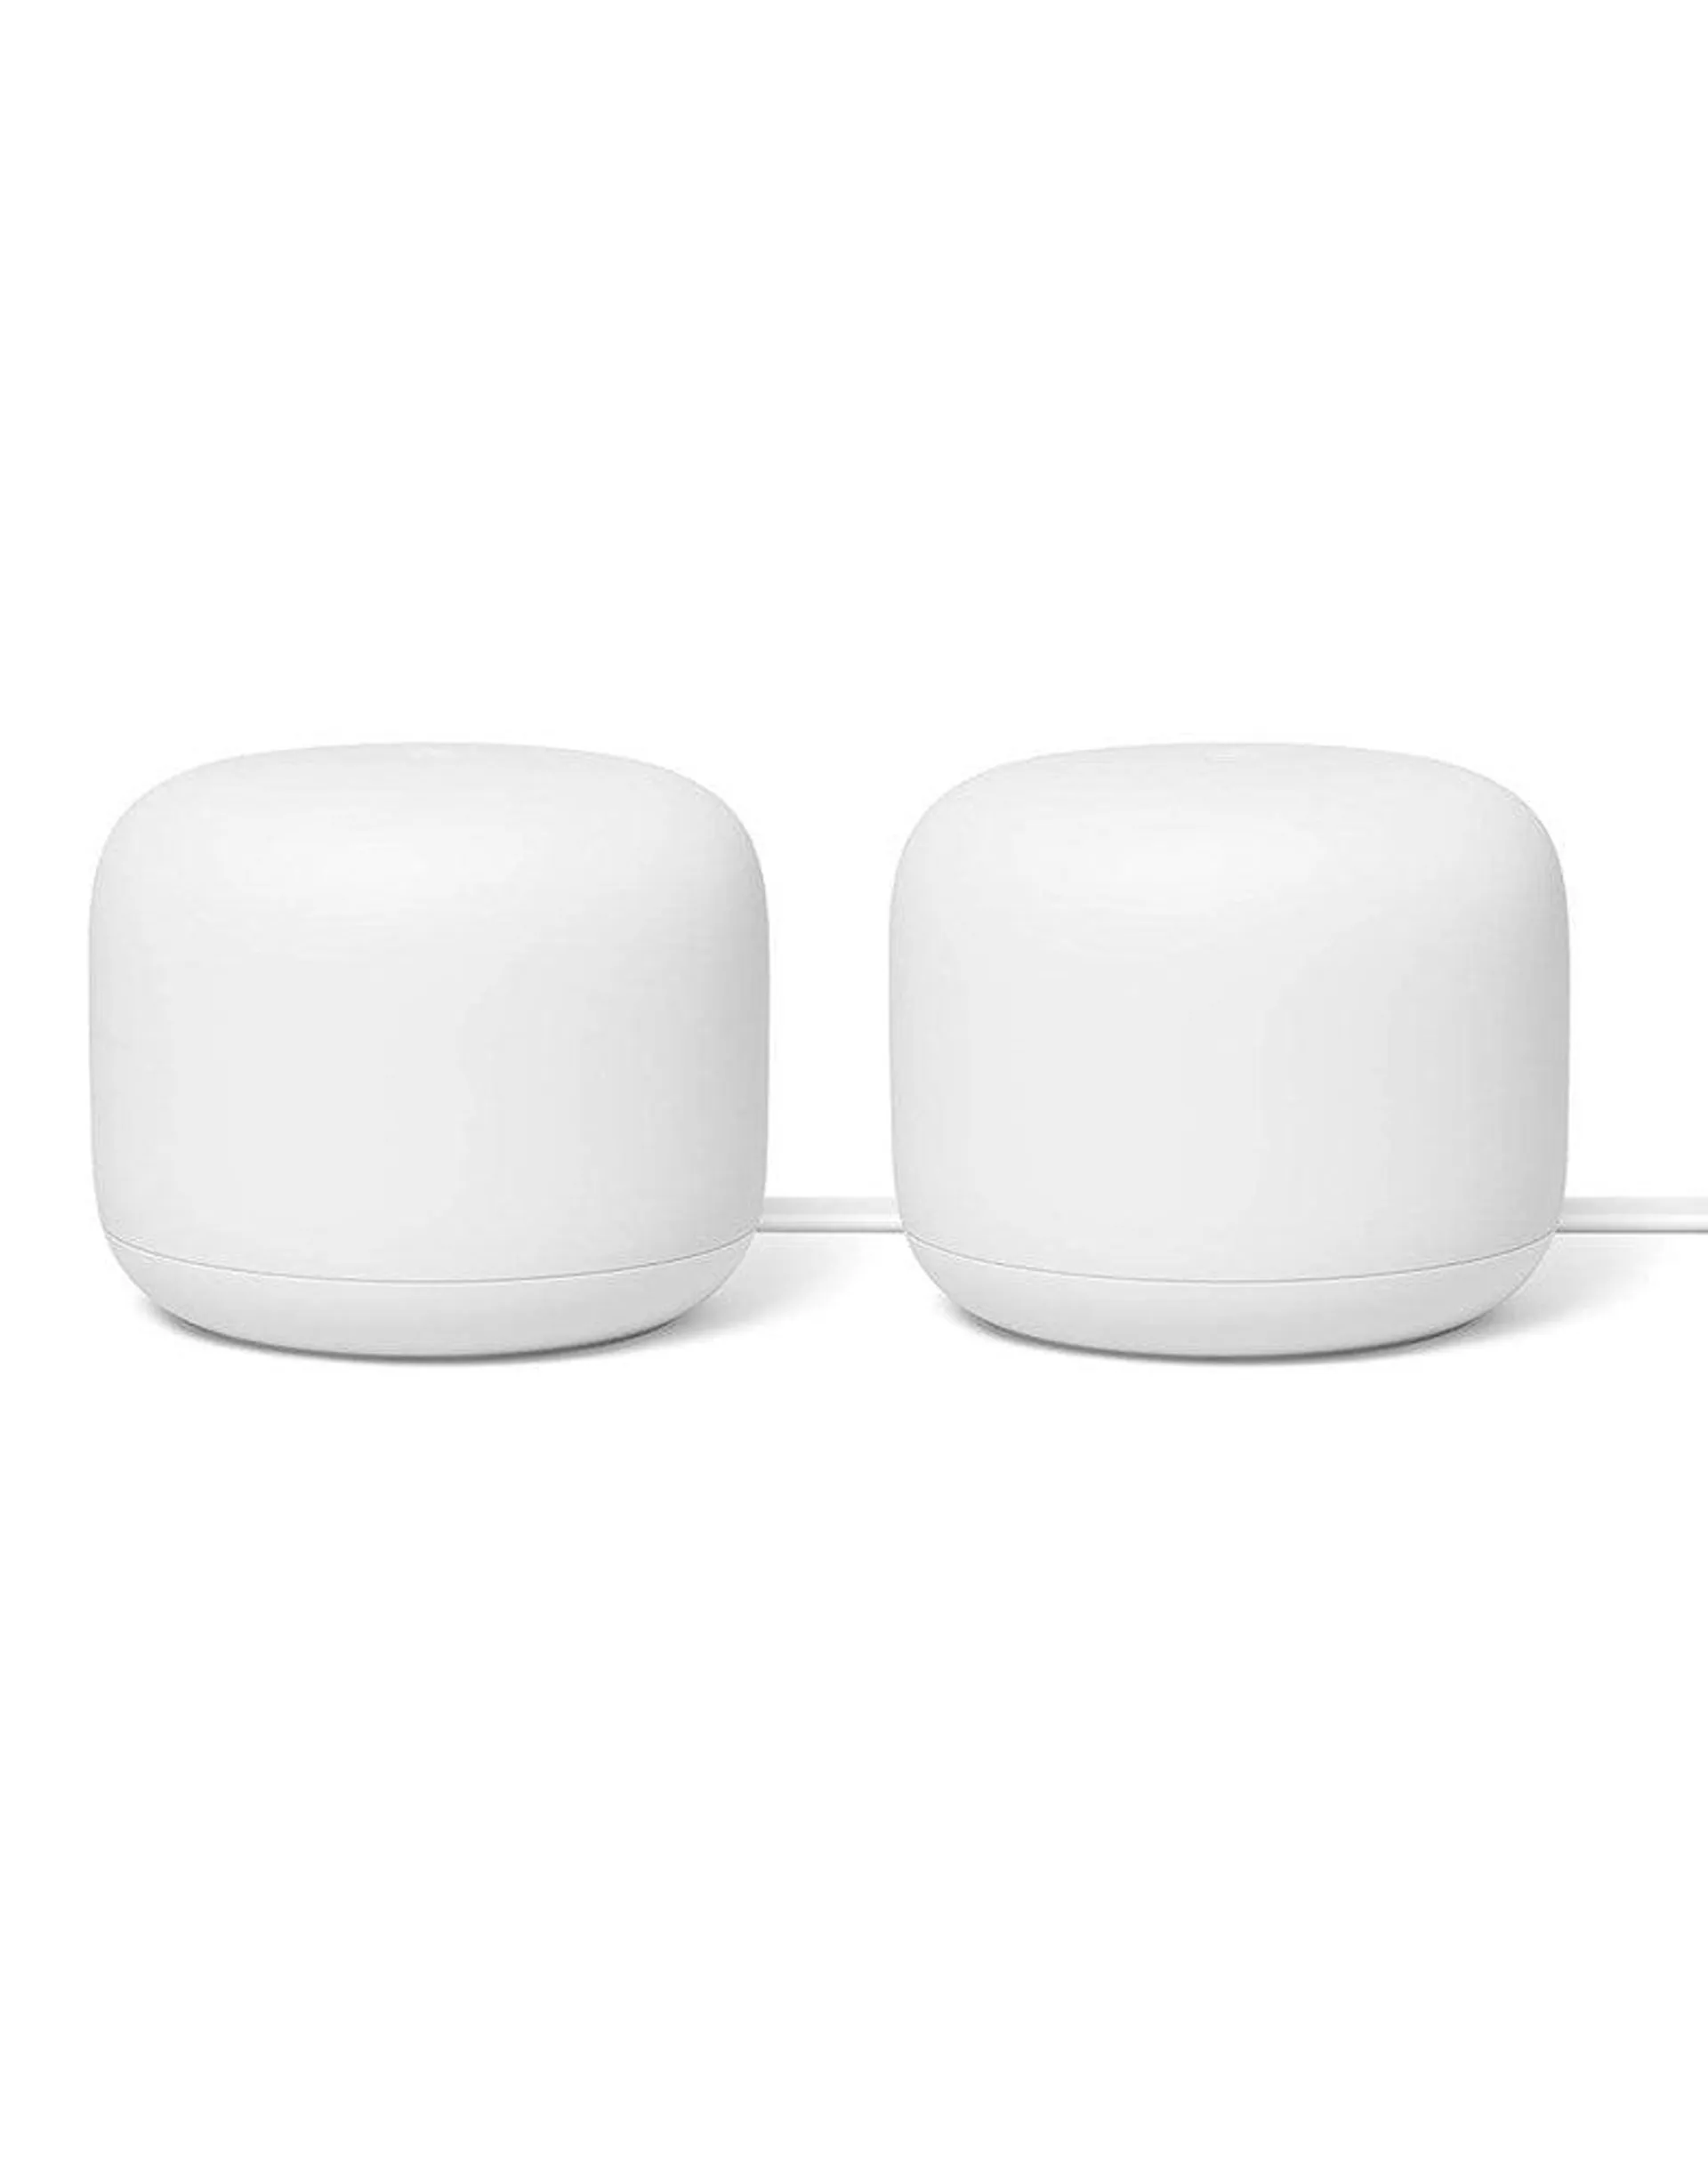 Google Nest WiFi Router & 1 Point -2 Packs (Brand New)